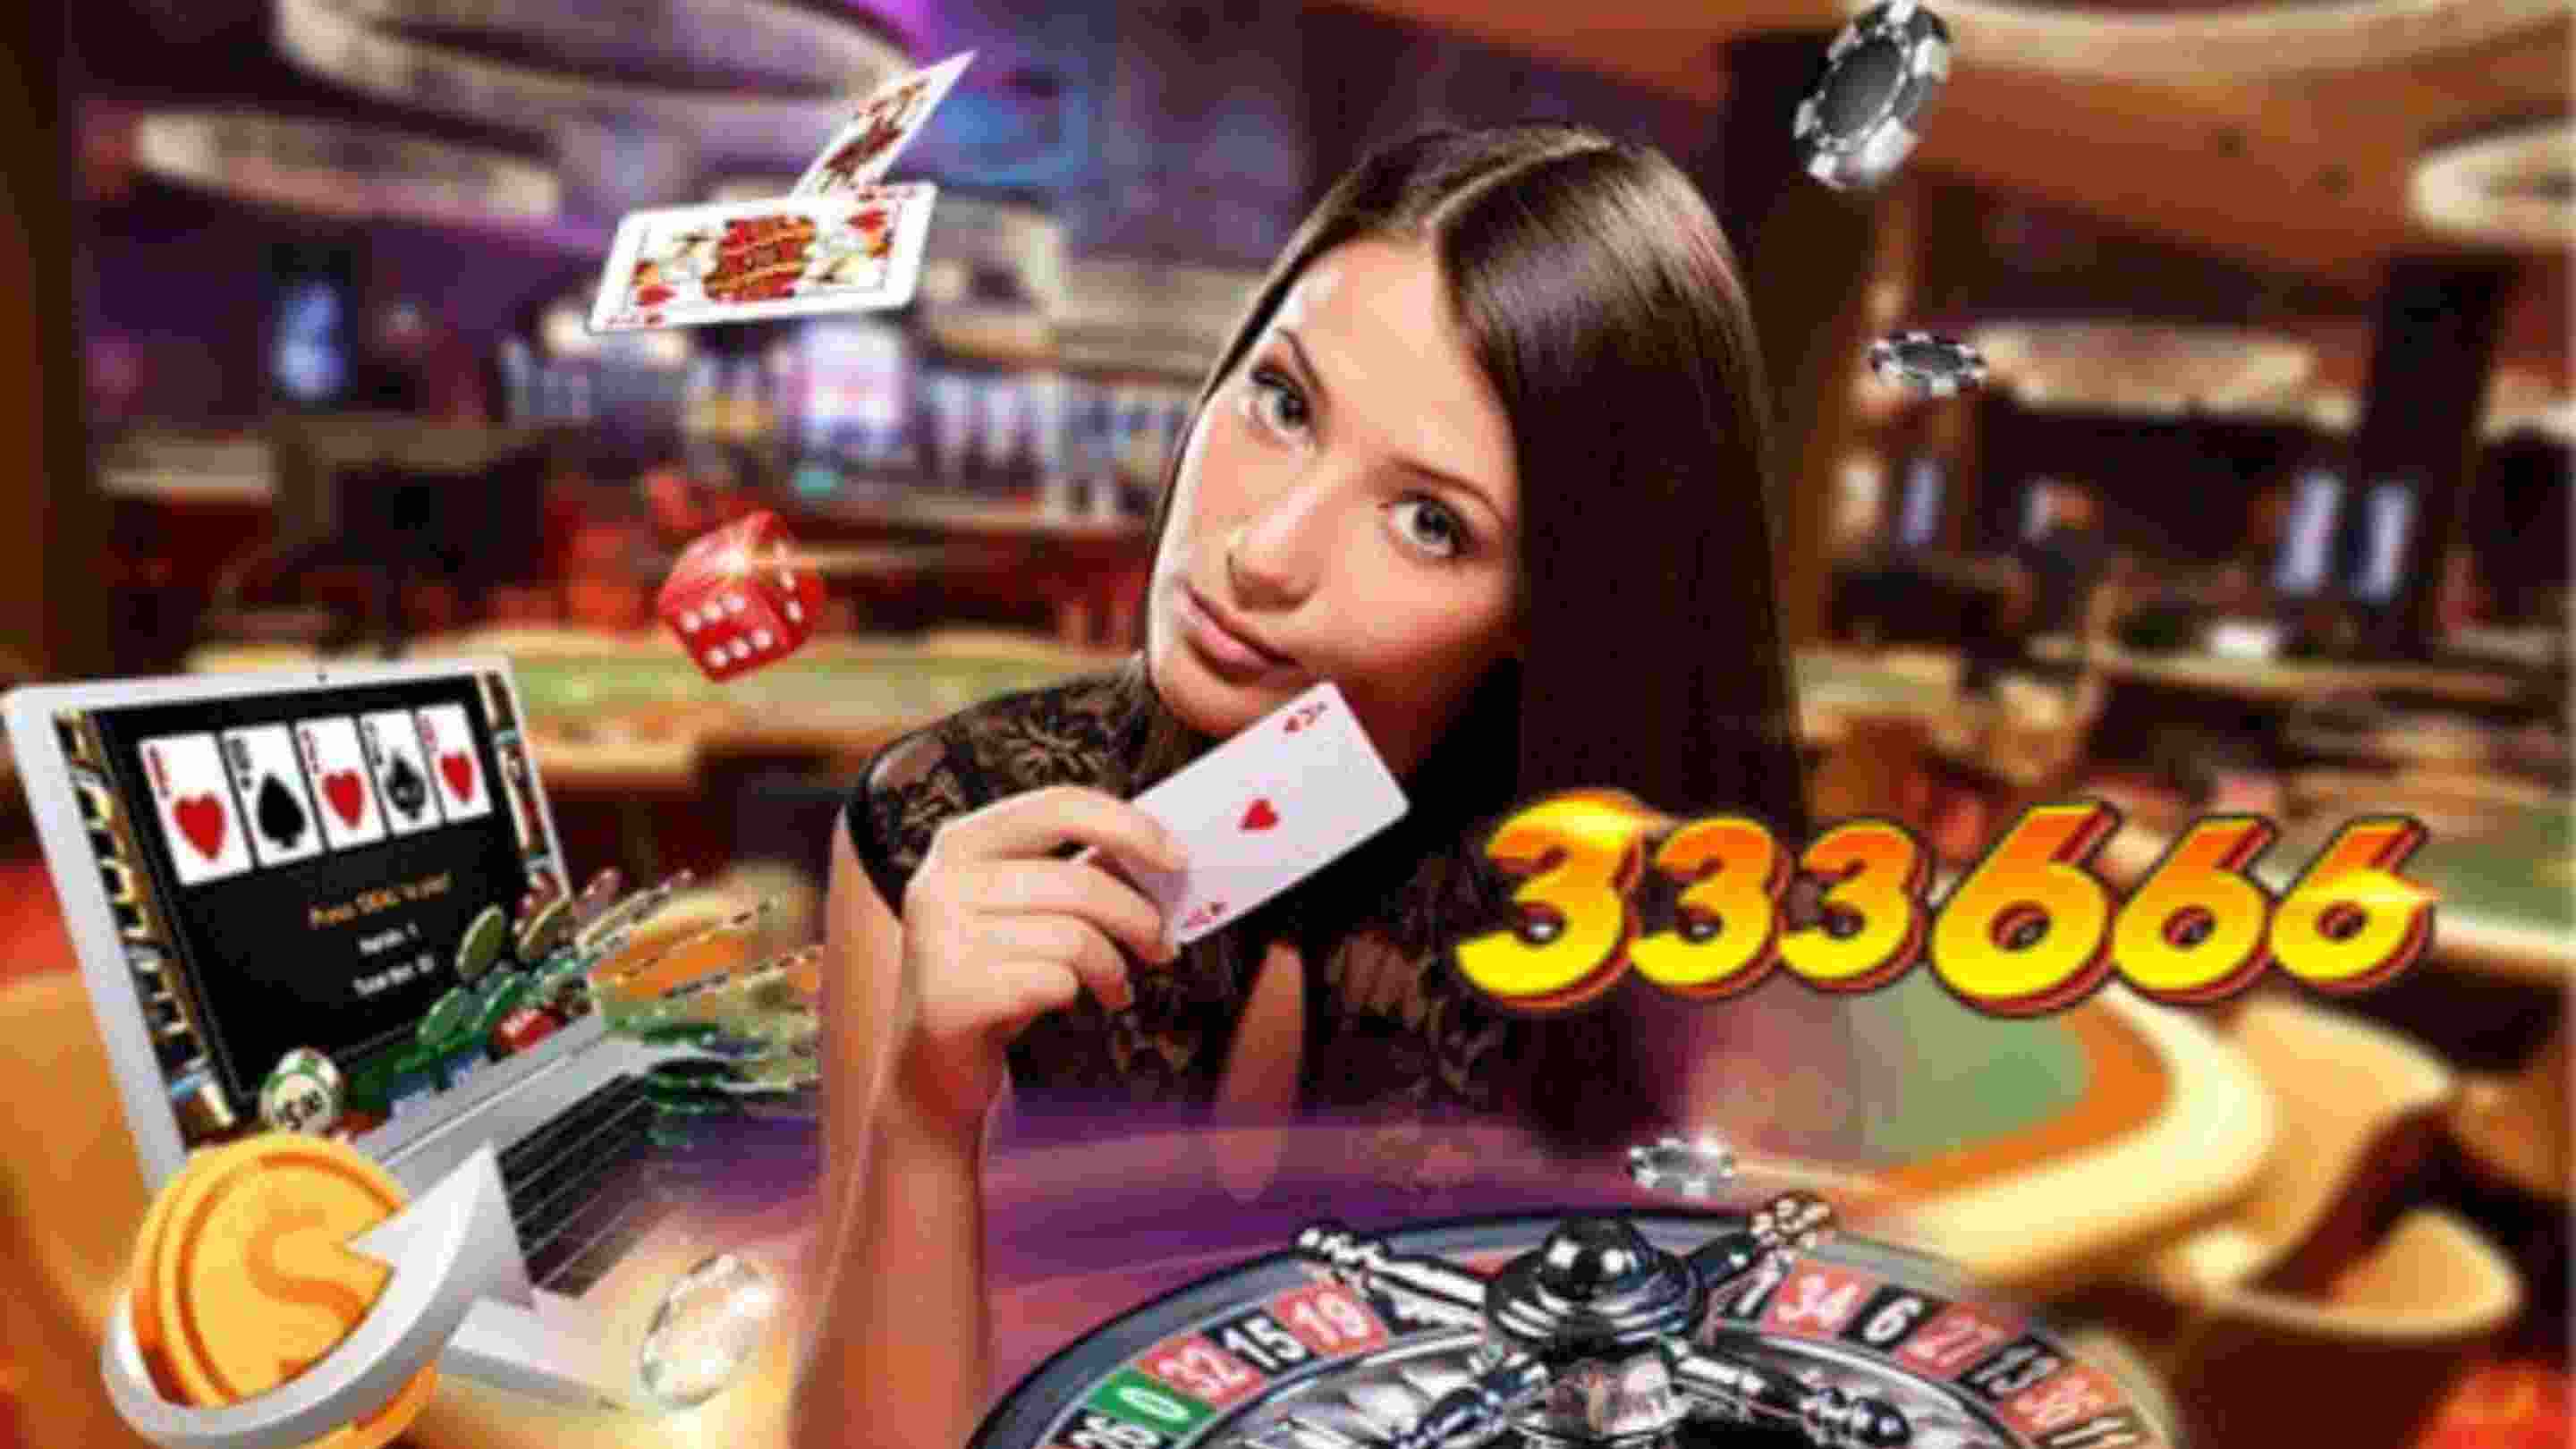 Chiến lược cược Live Casino 333666 kiếm thu nhập cao